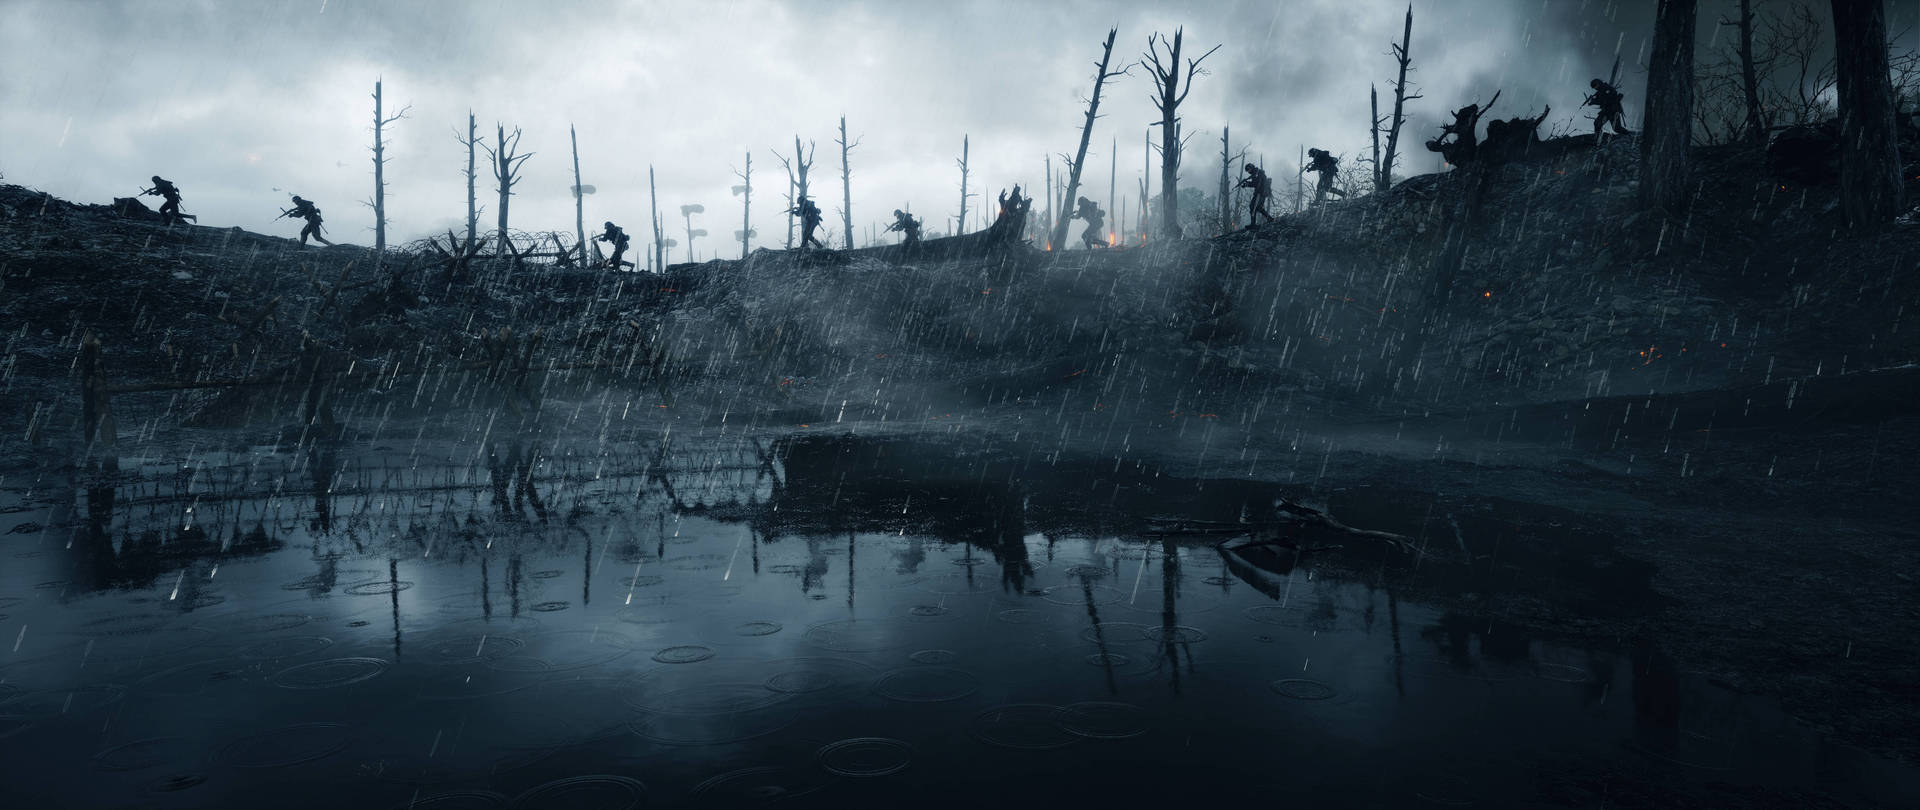 Battlefield1 Hd Apocalypse Wallpaper